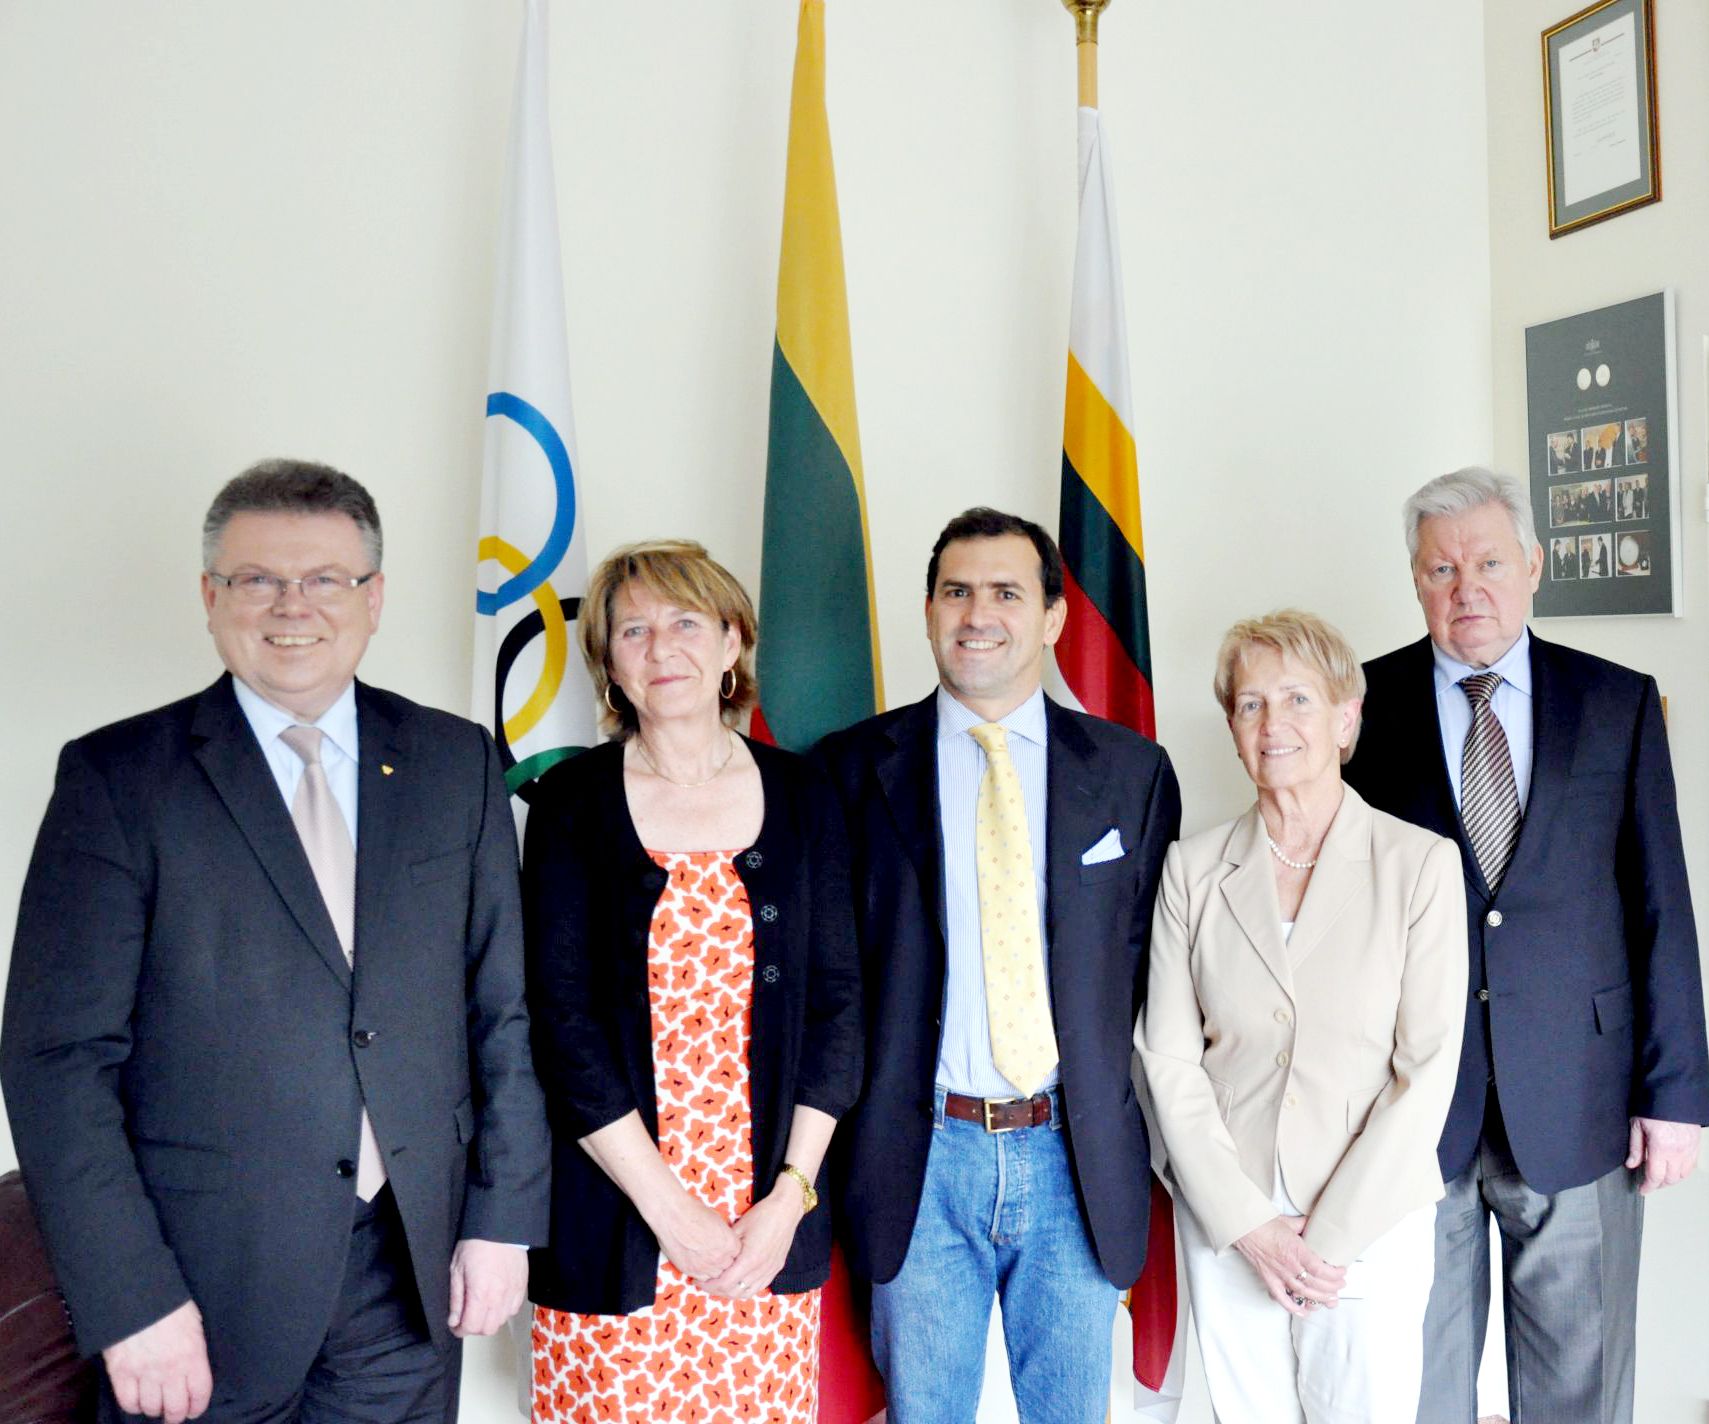 Olimpinis solidarumas lankosi Lietuvos tautiniame olimpiniame komitete – Europos olimpiniuose komitetuose